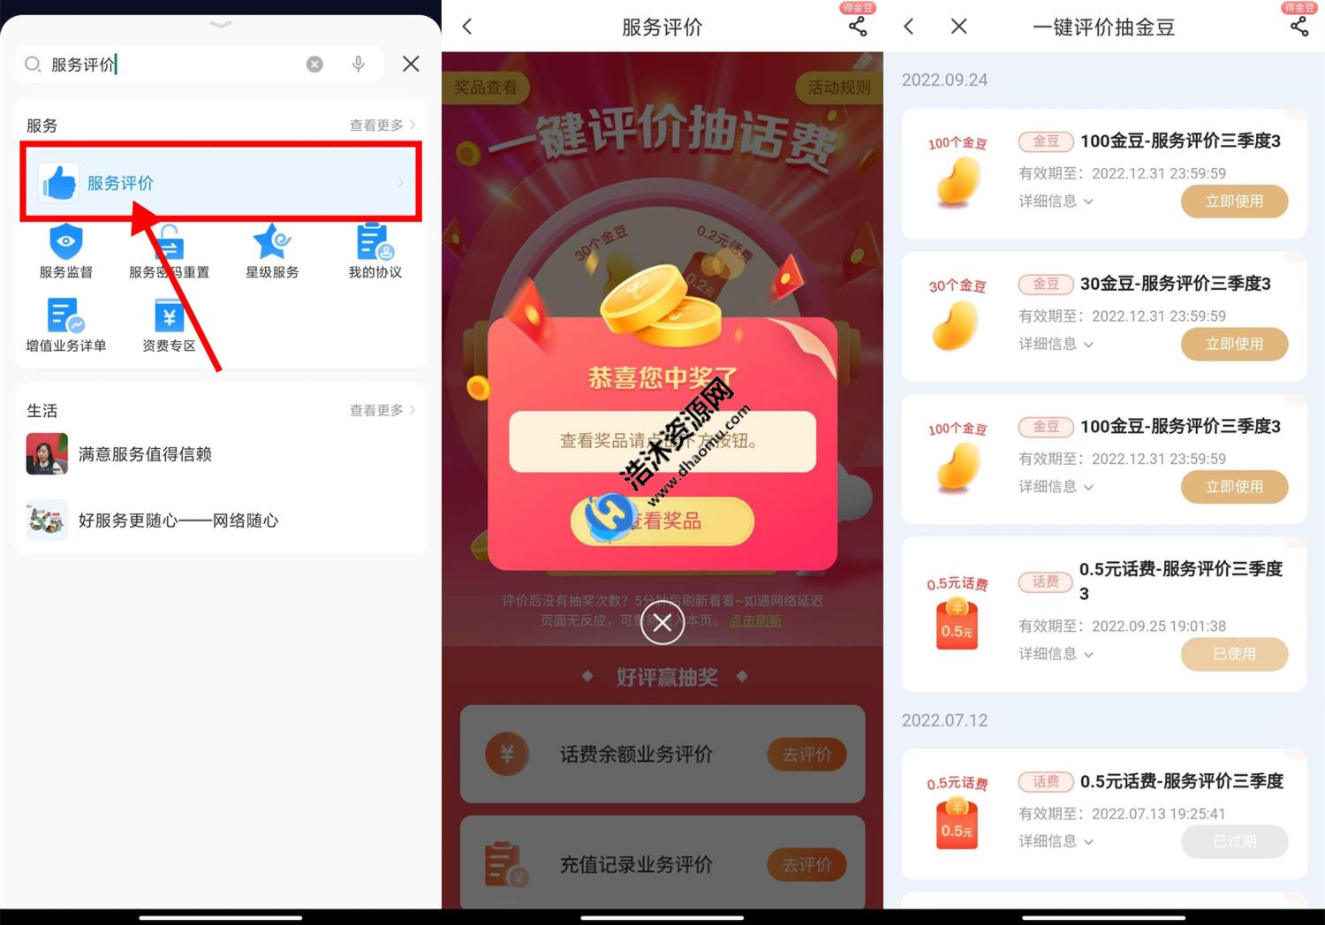 中国电信APP用户服务评价免费抽取0.5~4元话费